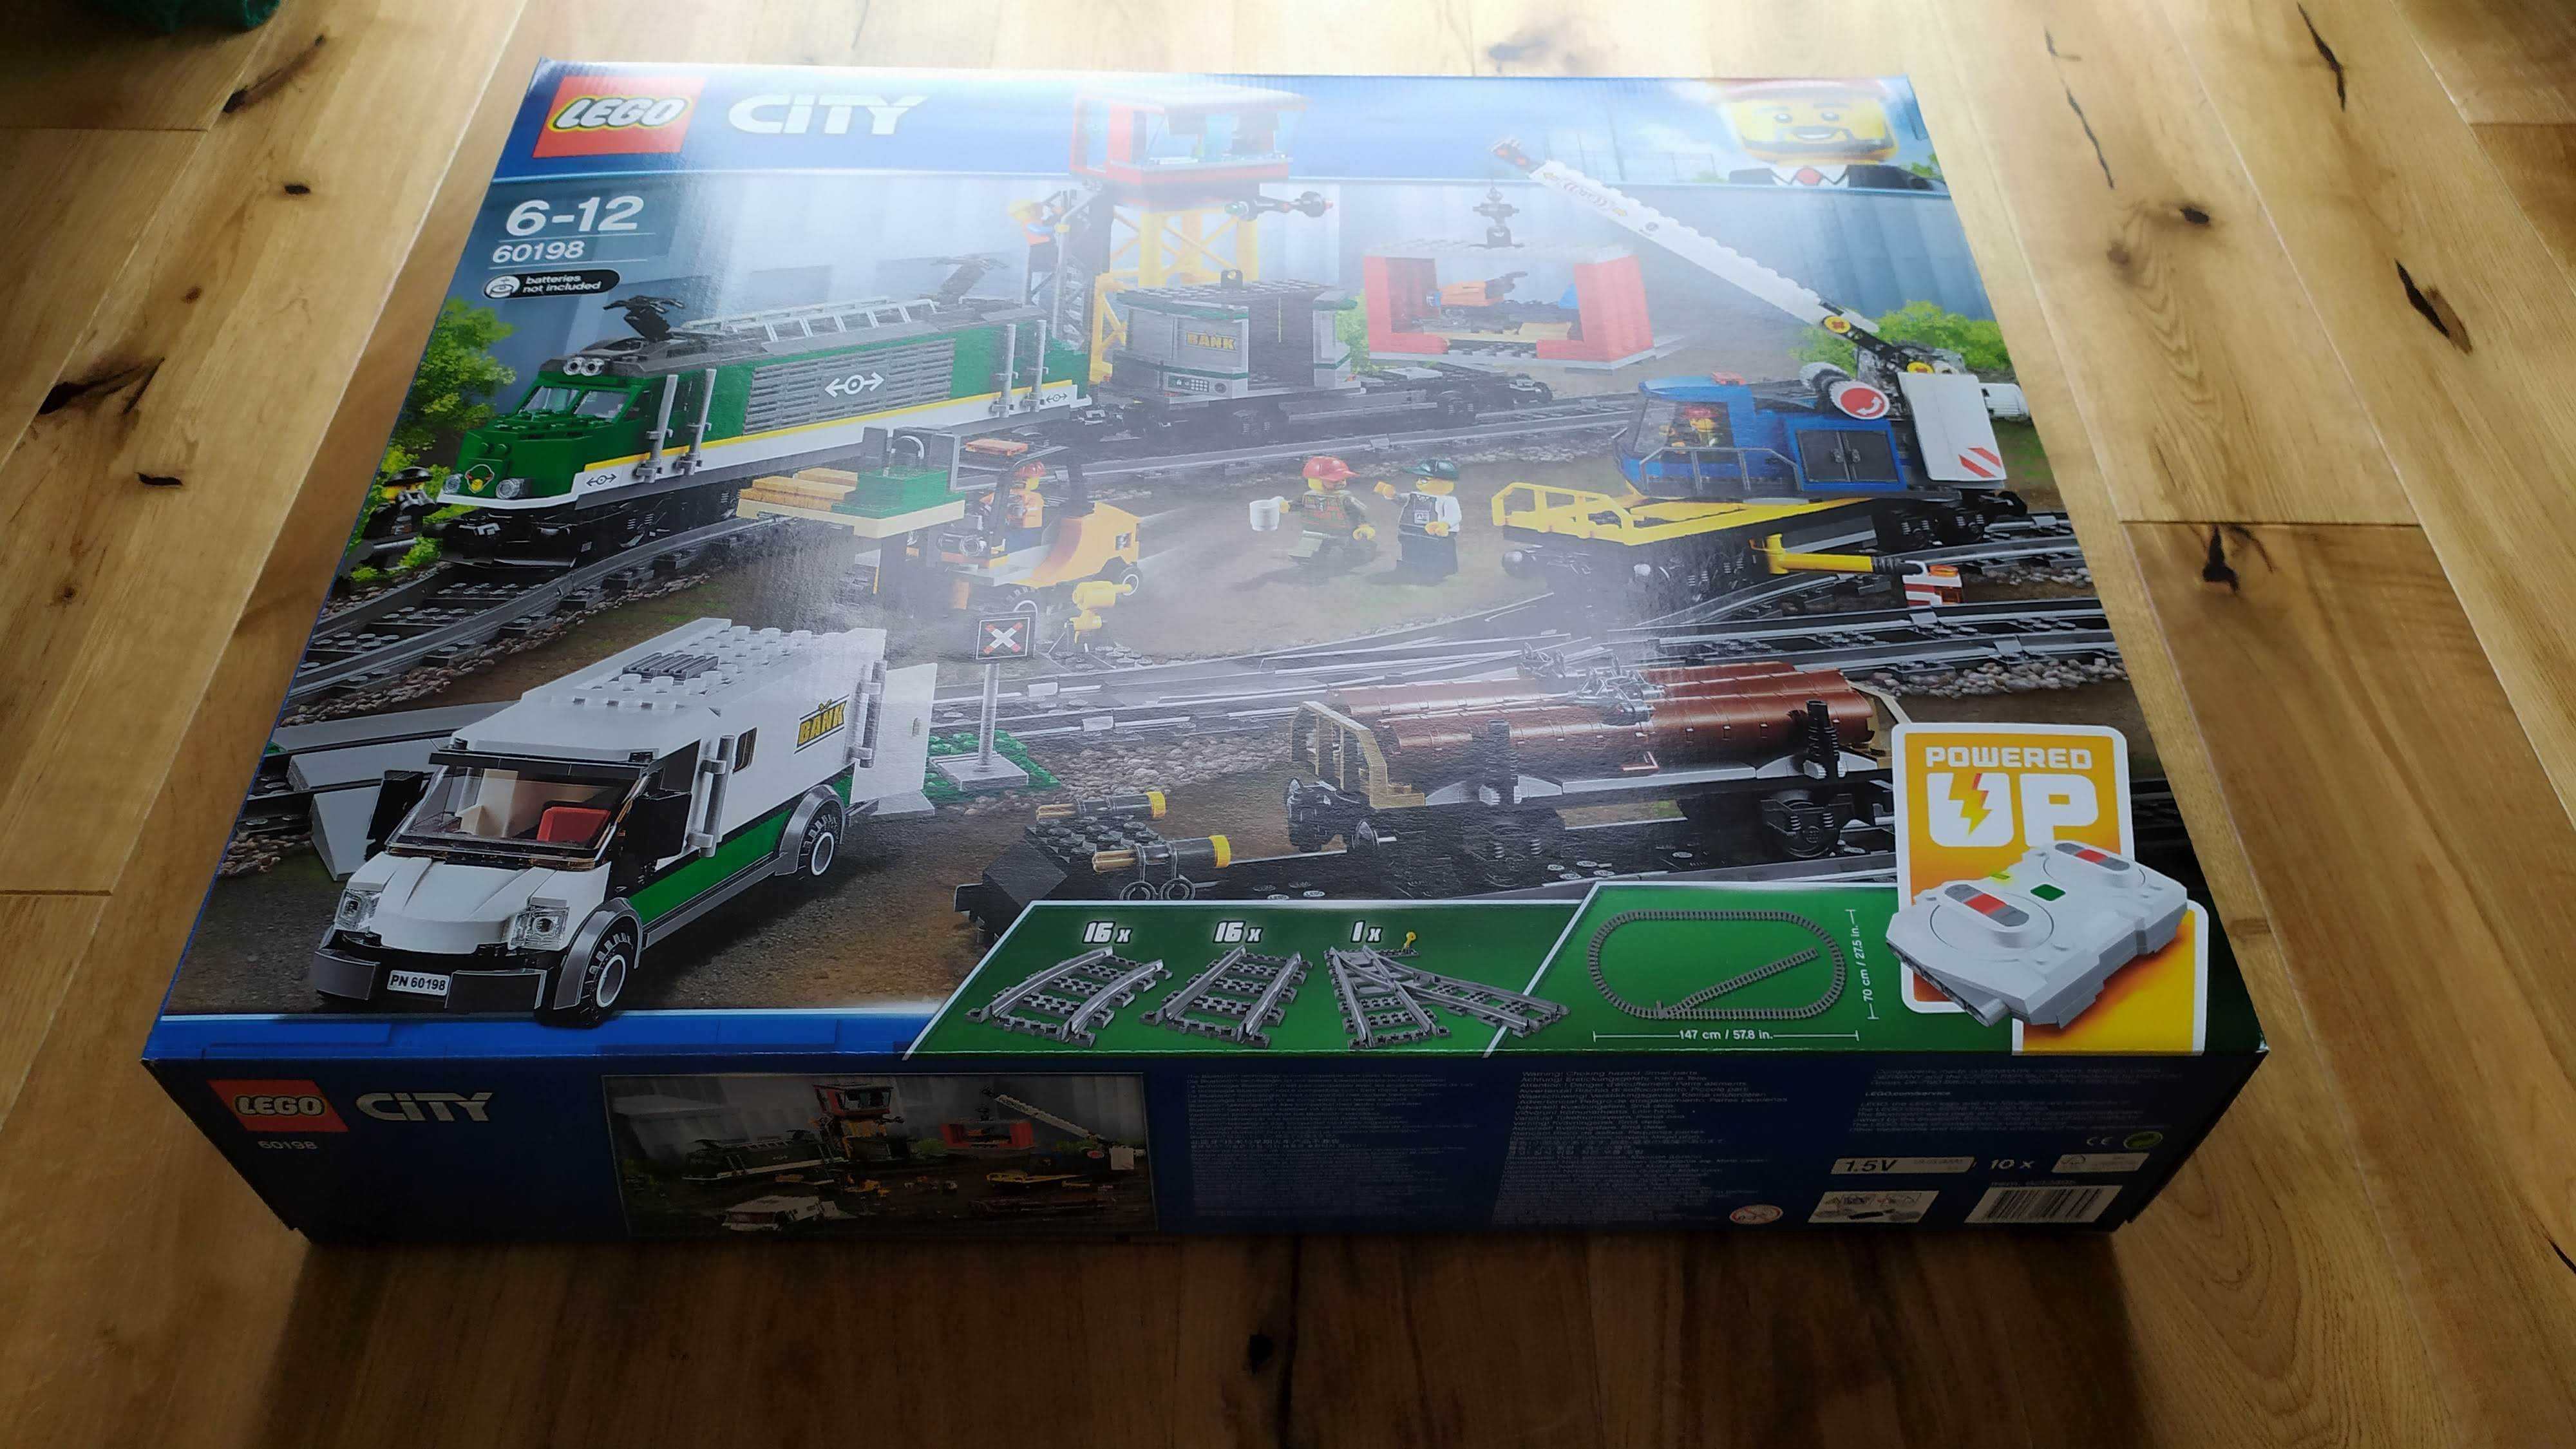 LEGO City 60198 Pociąg towarowy - NOWY